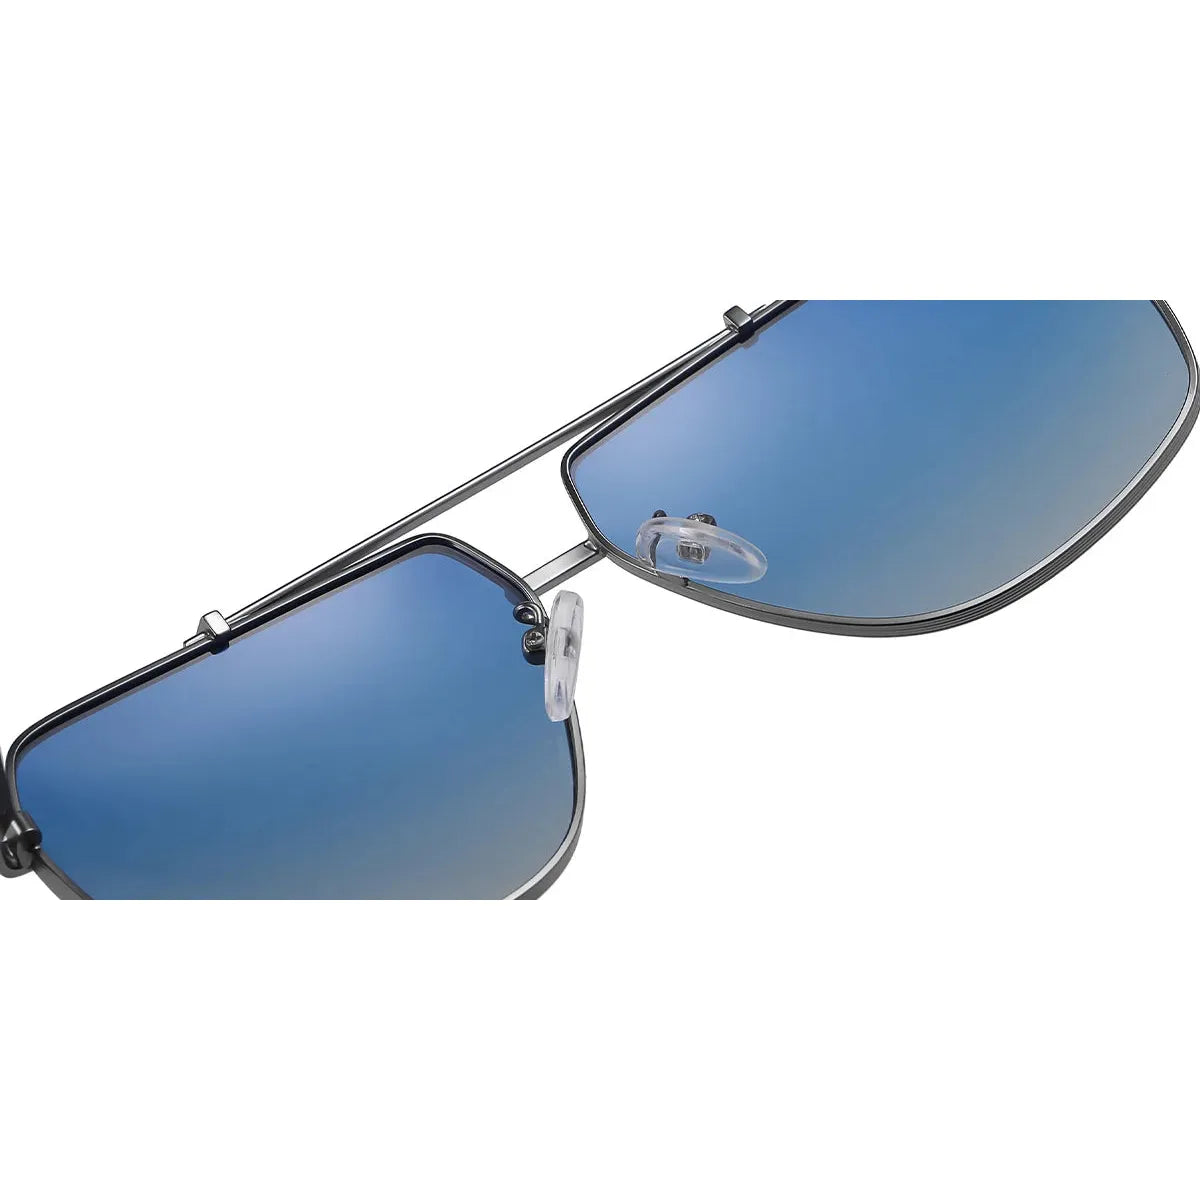 Candye Aviator Sunglasses SG4740 